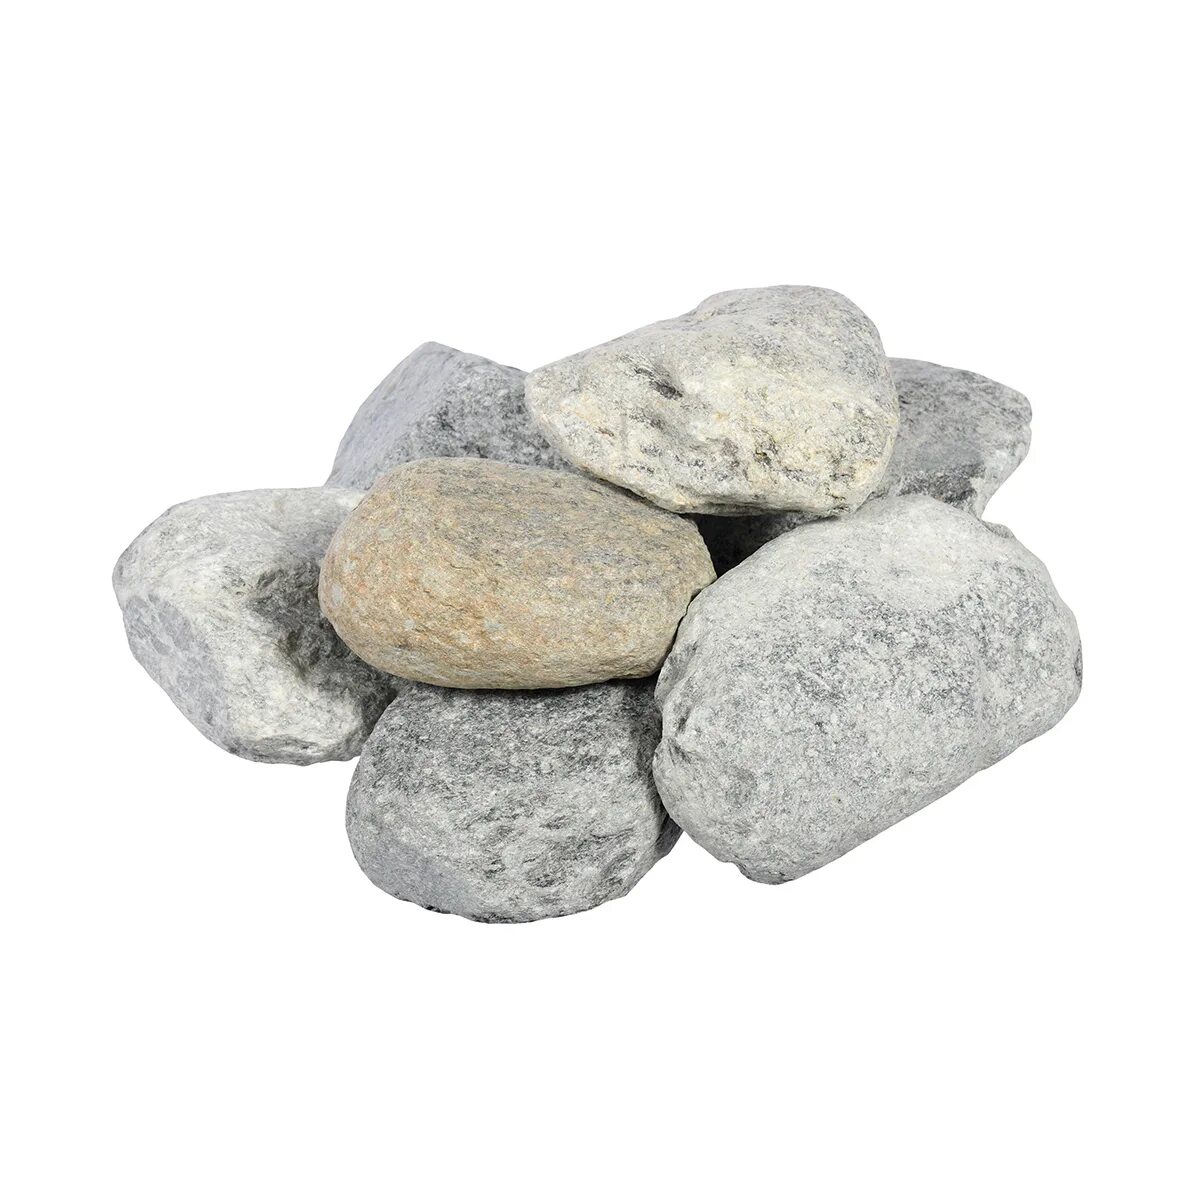 Камни для печи в баню купить. Камни талькохлорит 20 кг(обвалованный). Талькохлорит (20кг). Талькохлорит обвалованный для бани. Камень талькохлорит для бани.